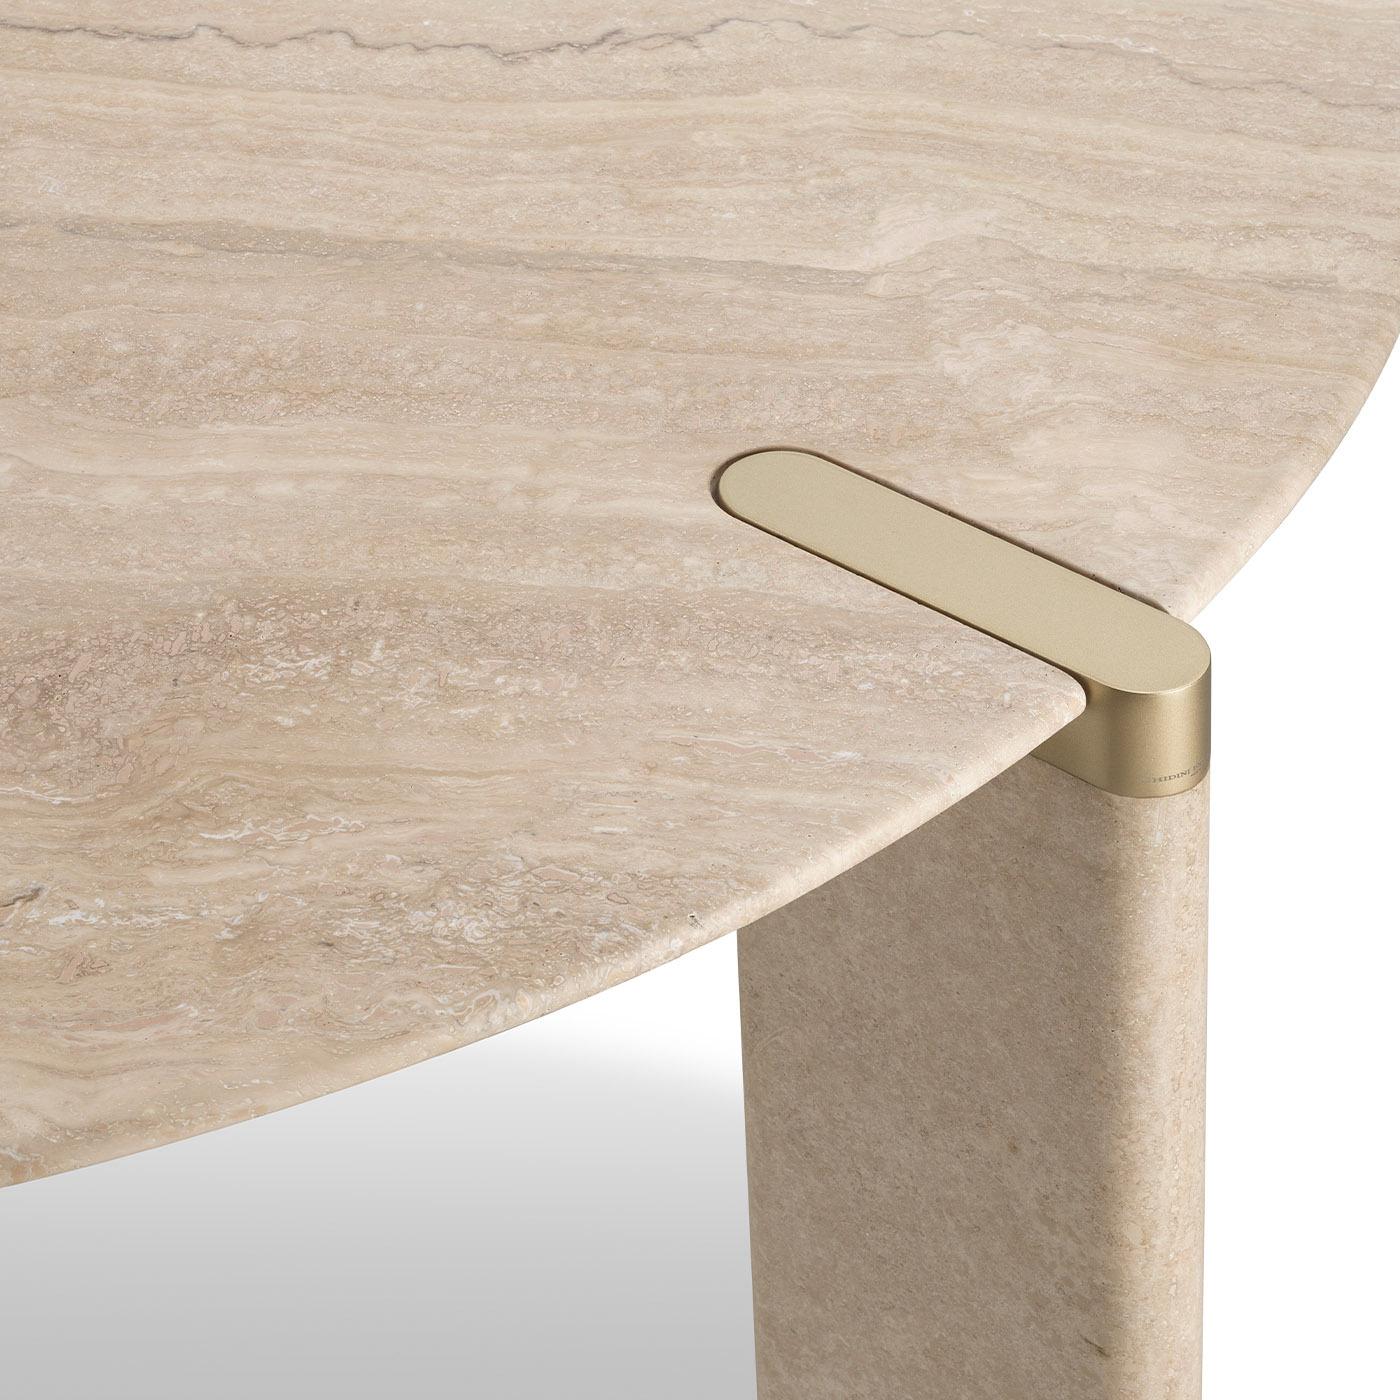 Alliant luxe et élégance, cette table ronde a été conçue par Lorenza Bozzoli pour laisser transparaître la beauté du marbre travertin. Des détails en laiton satiné accentuent la silhouette, où le plateau circulaire (Ø 160 cm) est solidement soutenu